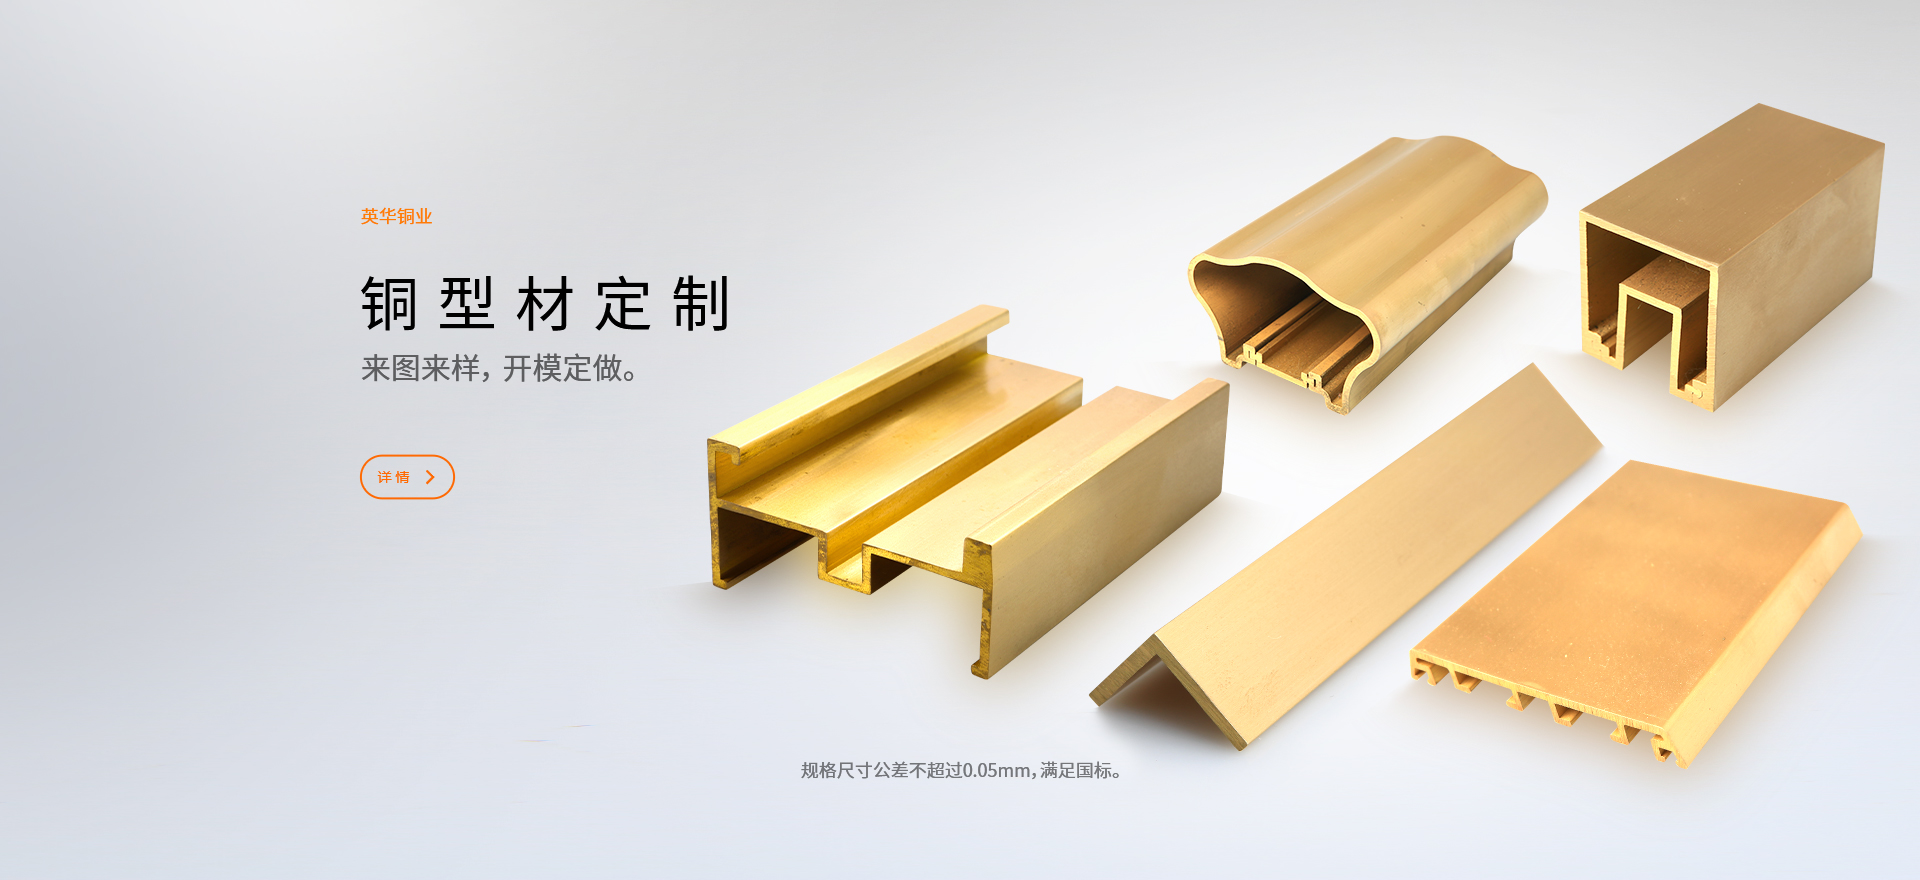 铜型材厂家加工技术